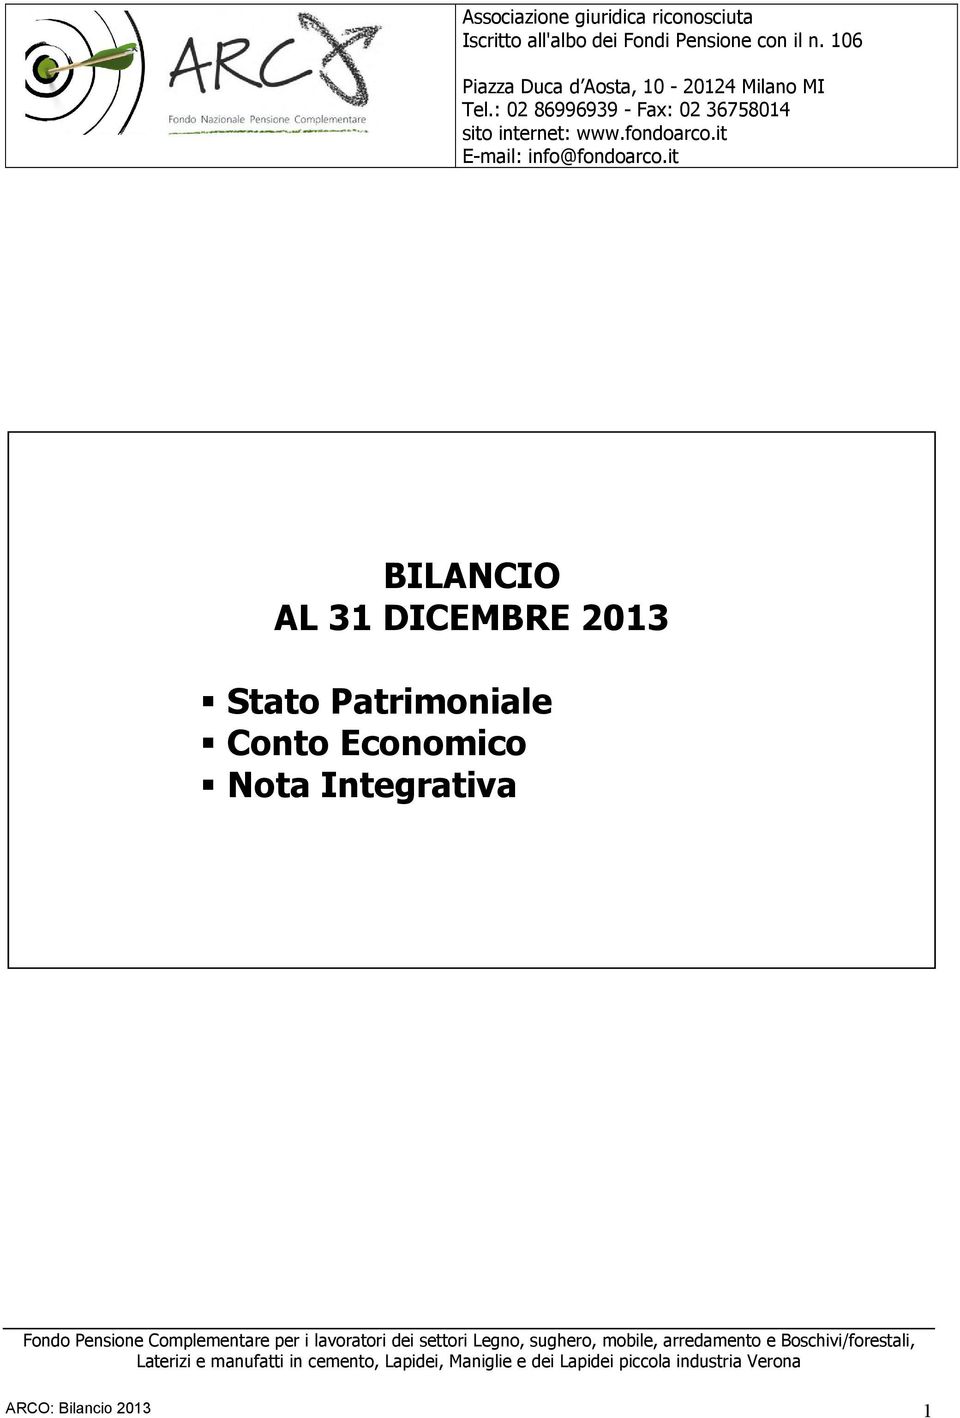 it BILANCIO BILANCIO D'ESERCIZIO AL 31 DICEMBRE AL 312013 DICEMBRE 2004 Stato Patrimoniale Conto Economico Nota Integrativa Fondo Pensione